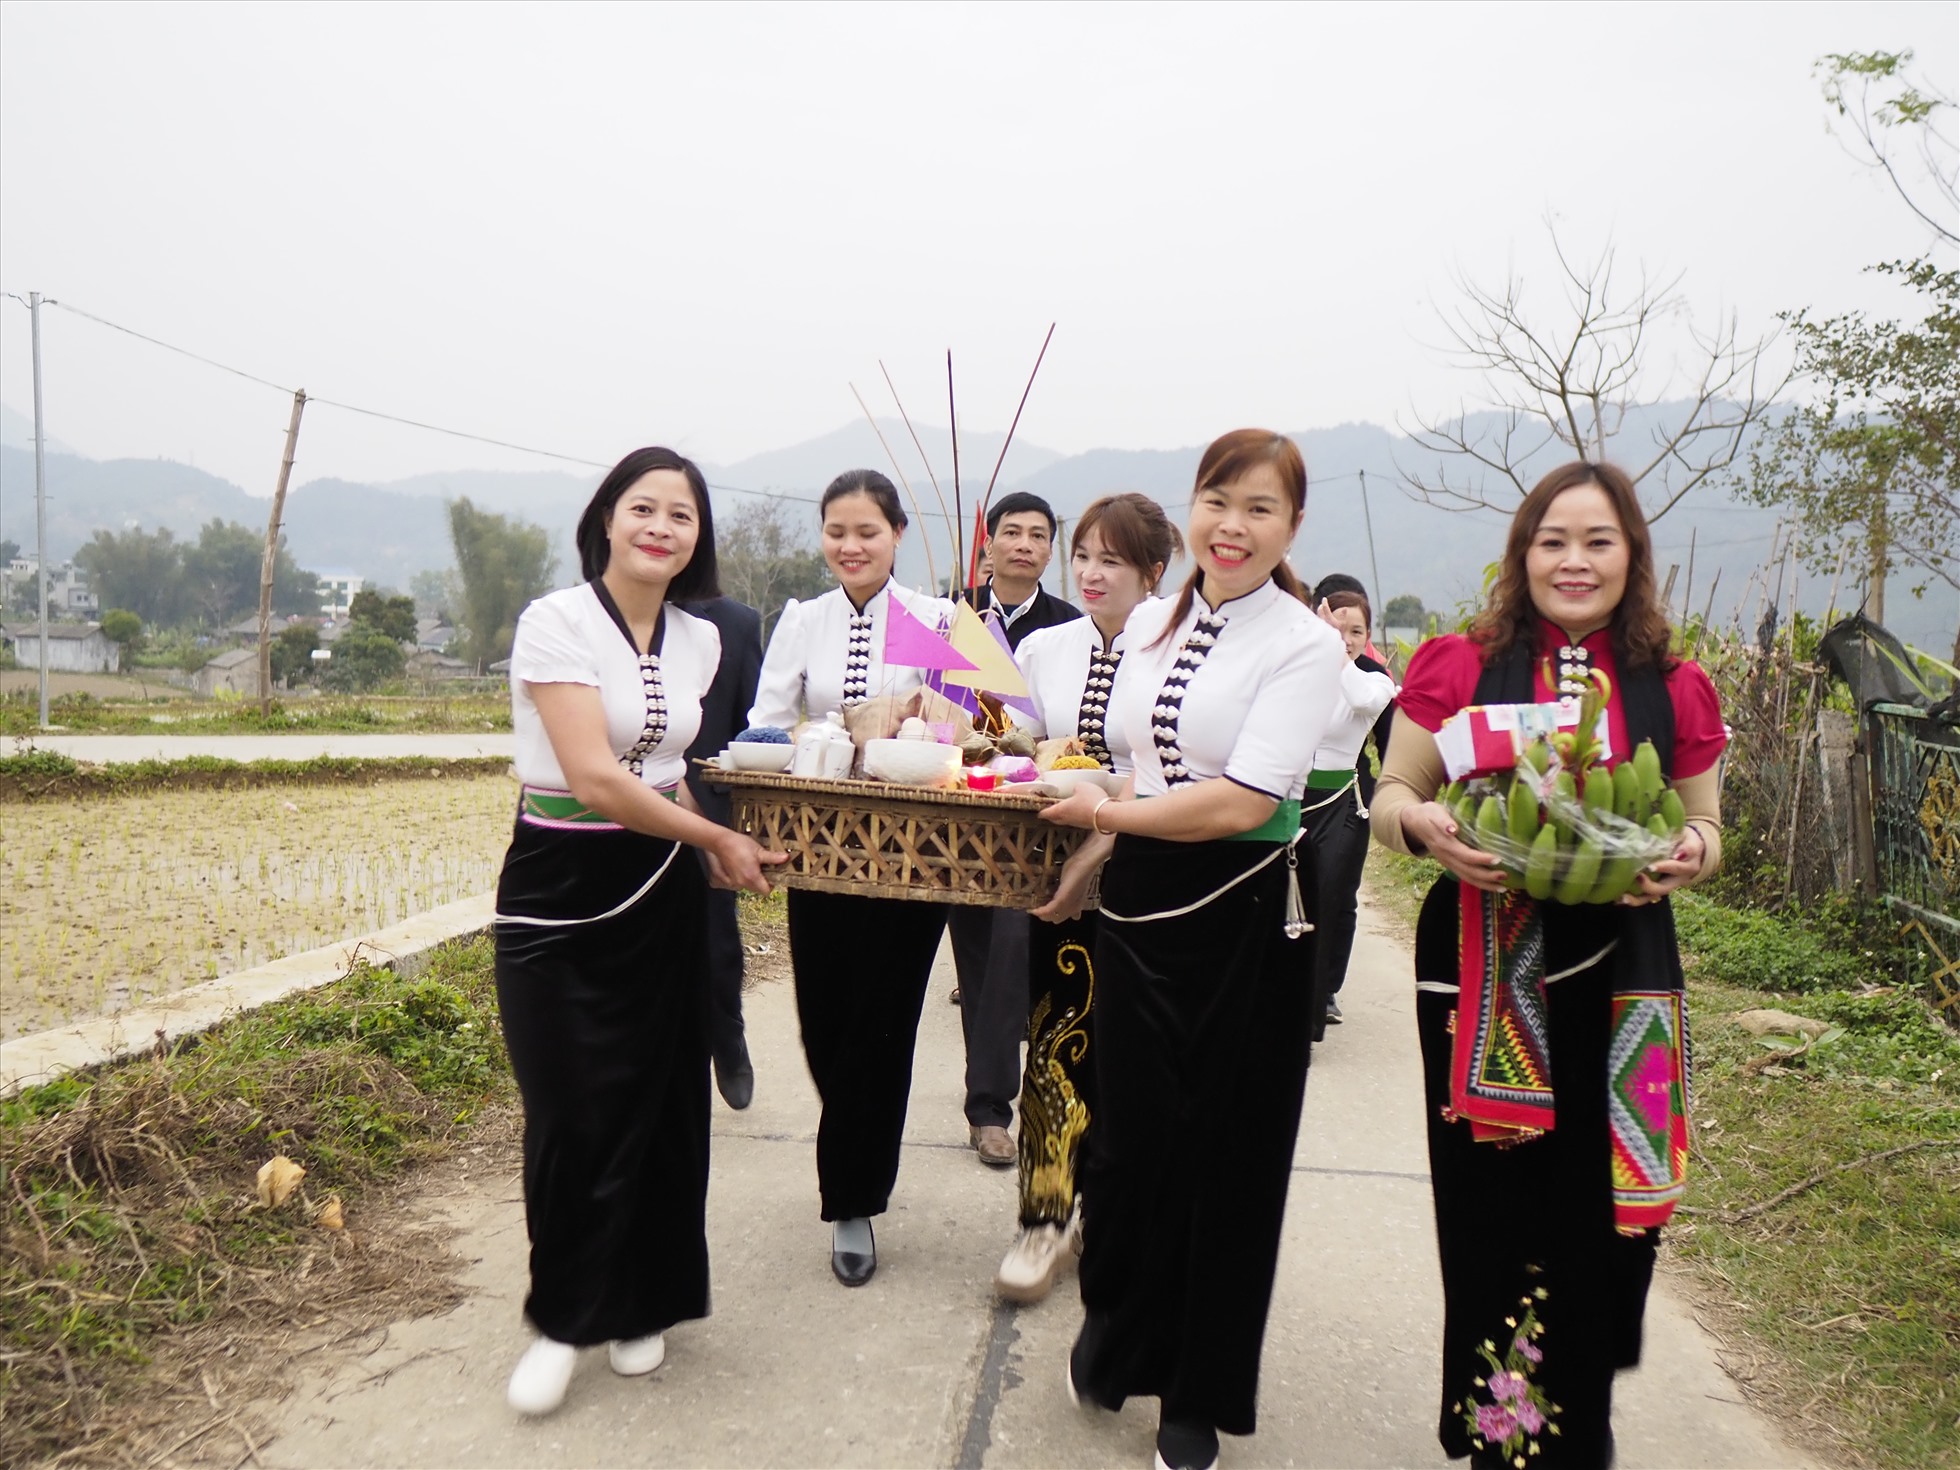 Lễ hội Lùng Tùng của người Thái ở xã Mường Cang, huyện Than Uyên, tỉnh Lai Châu là hoạt động tín ngưỡng mang tính chất nghi lễ nông nghiệp cổ xưa, mở đầu một mùa sản xuất mới và được tổ chức vào dịp đầu xuân.